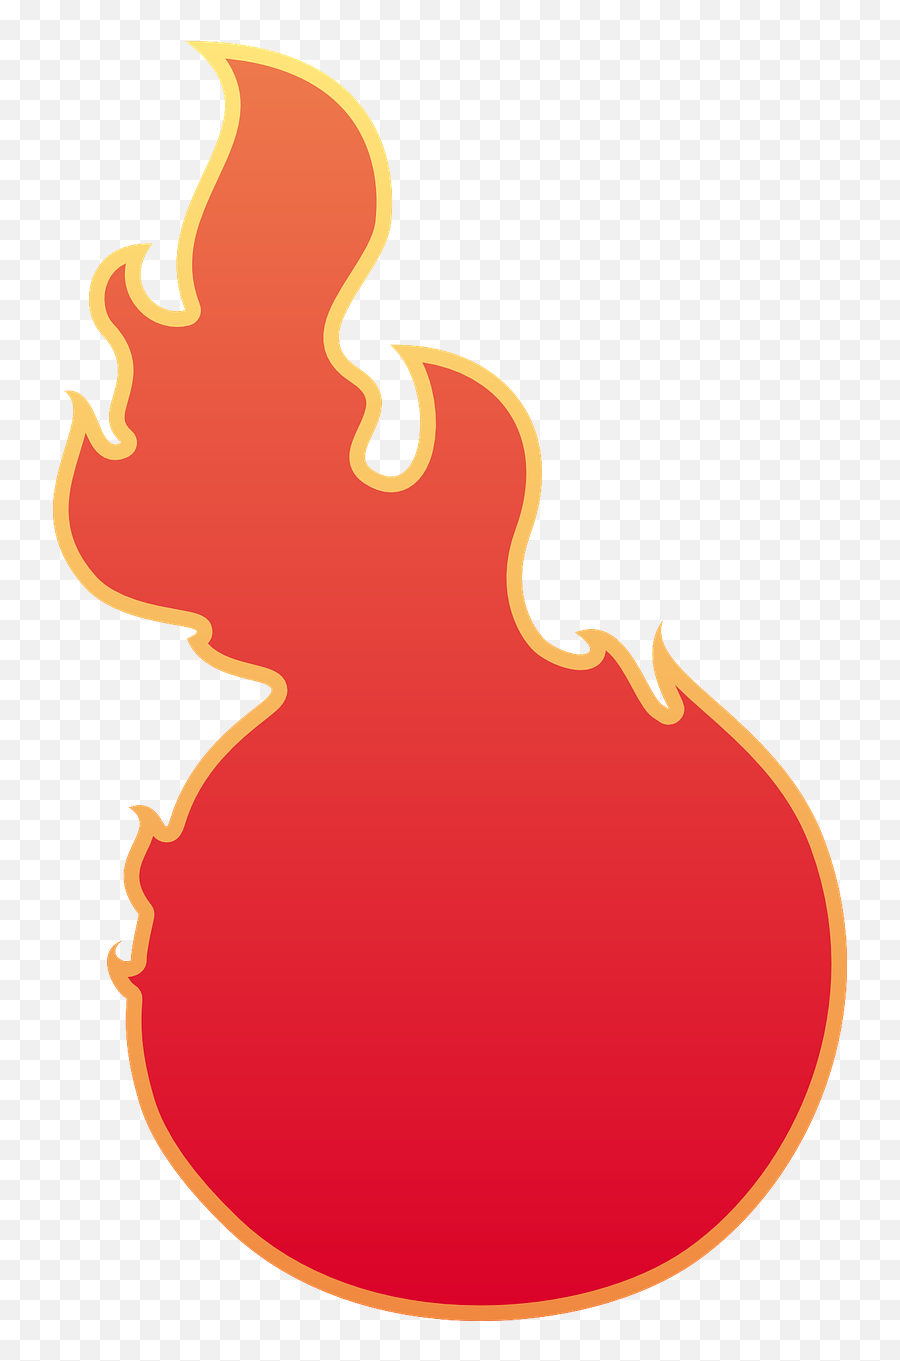 Download Fireball Comet Meteor Fire - Meteor Fire Transparent Emoji,Comet Emoji